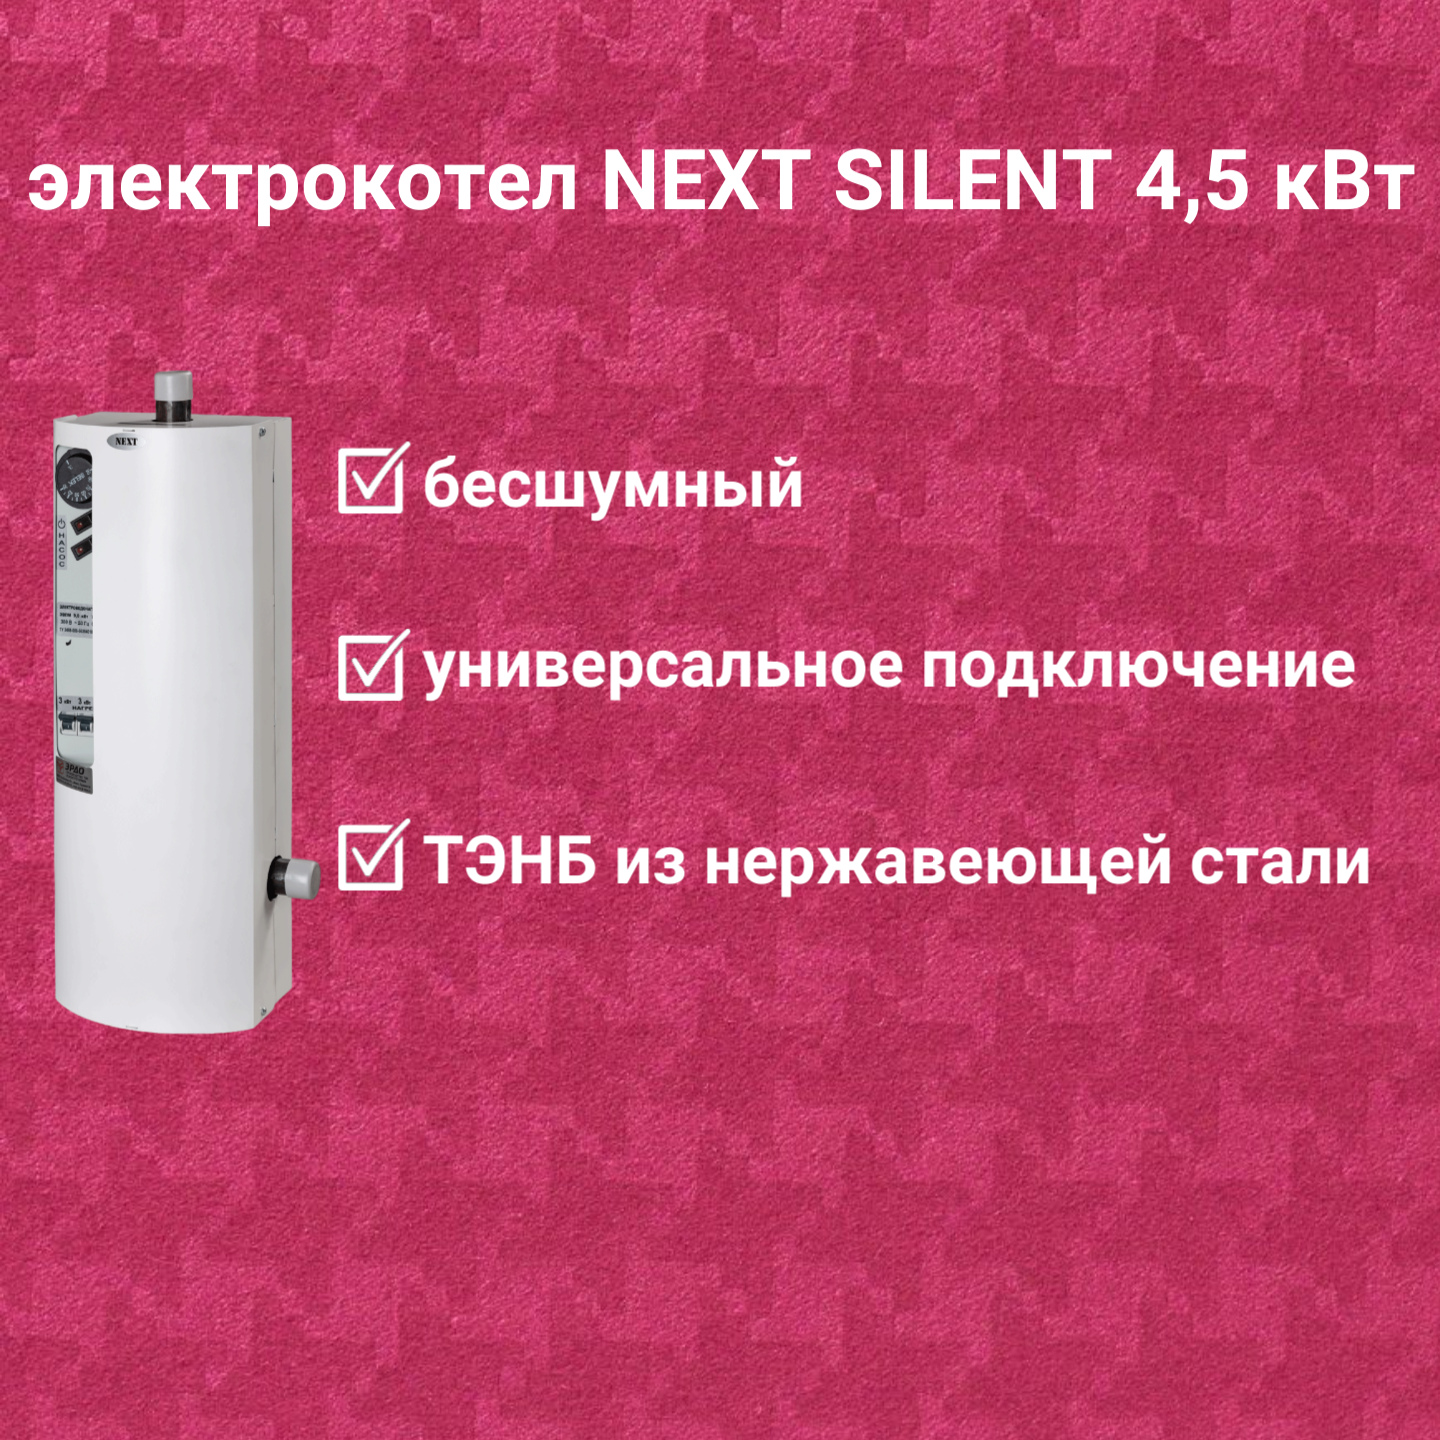 Электрокотел ЭРДО ЭВПМ-NEXT-SILENT 4.5 кВт с GSM модулем в комплекте купить по цене 16 950 руб.